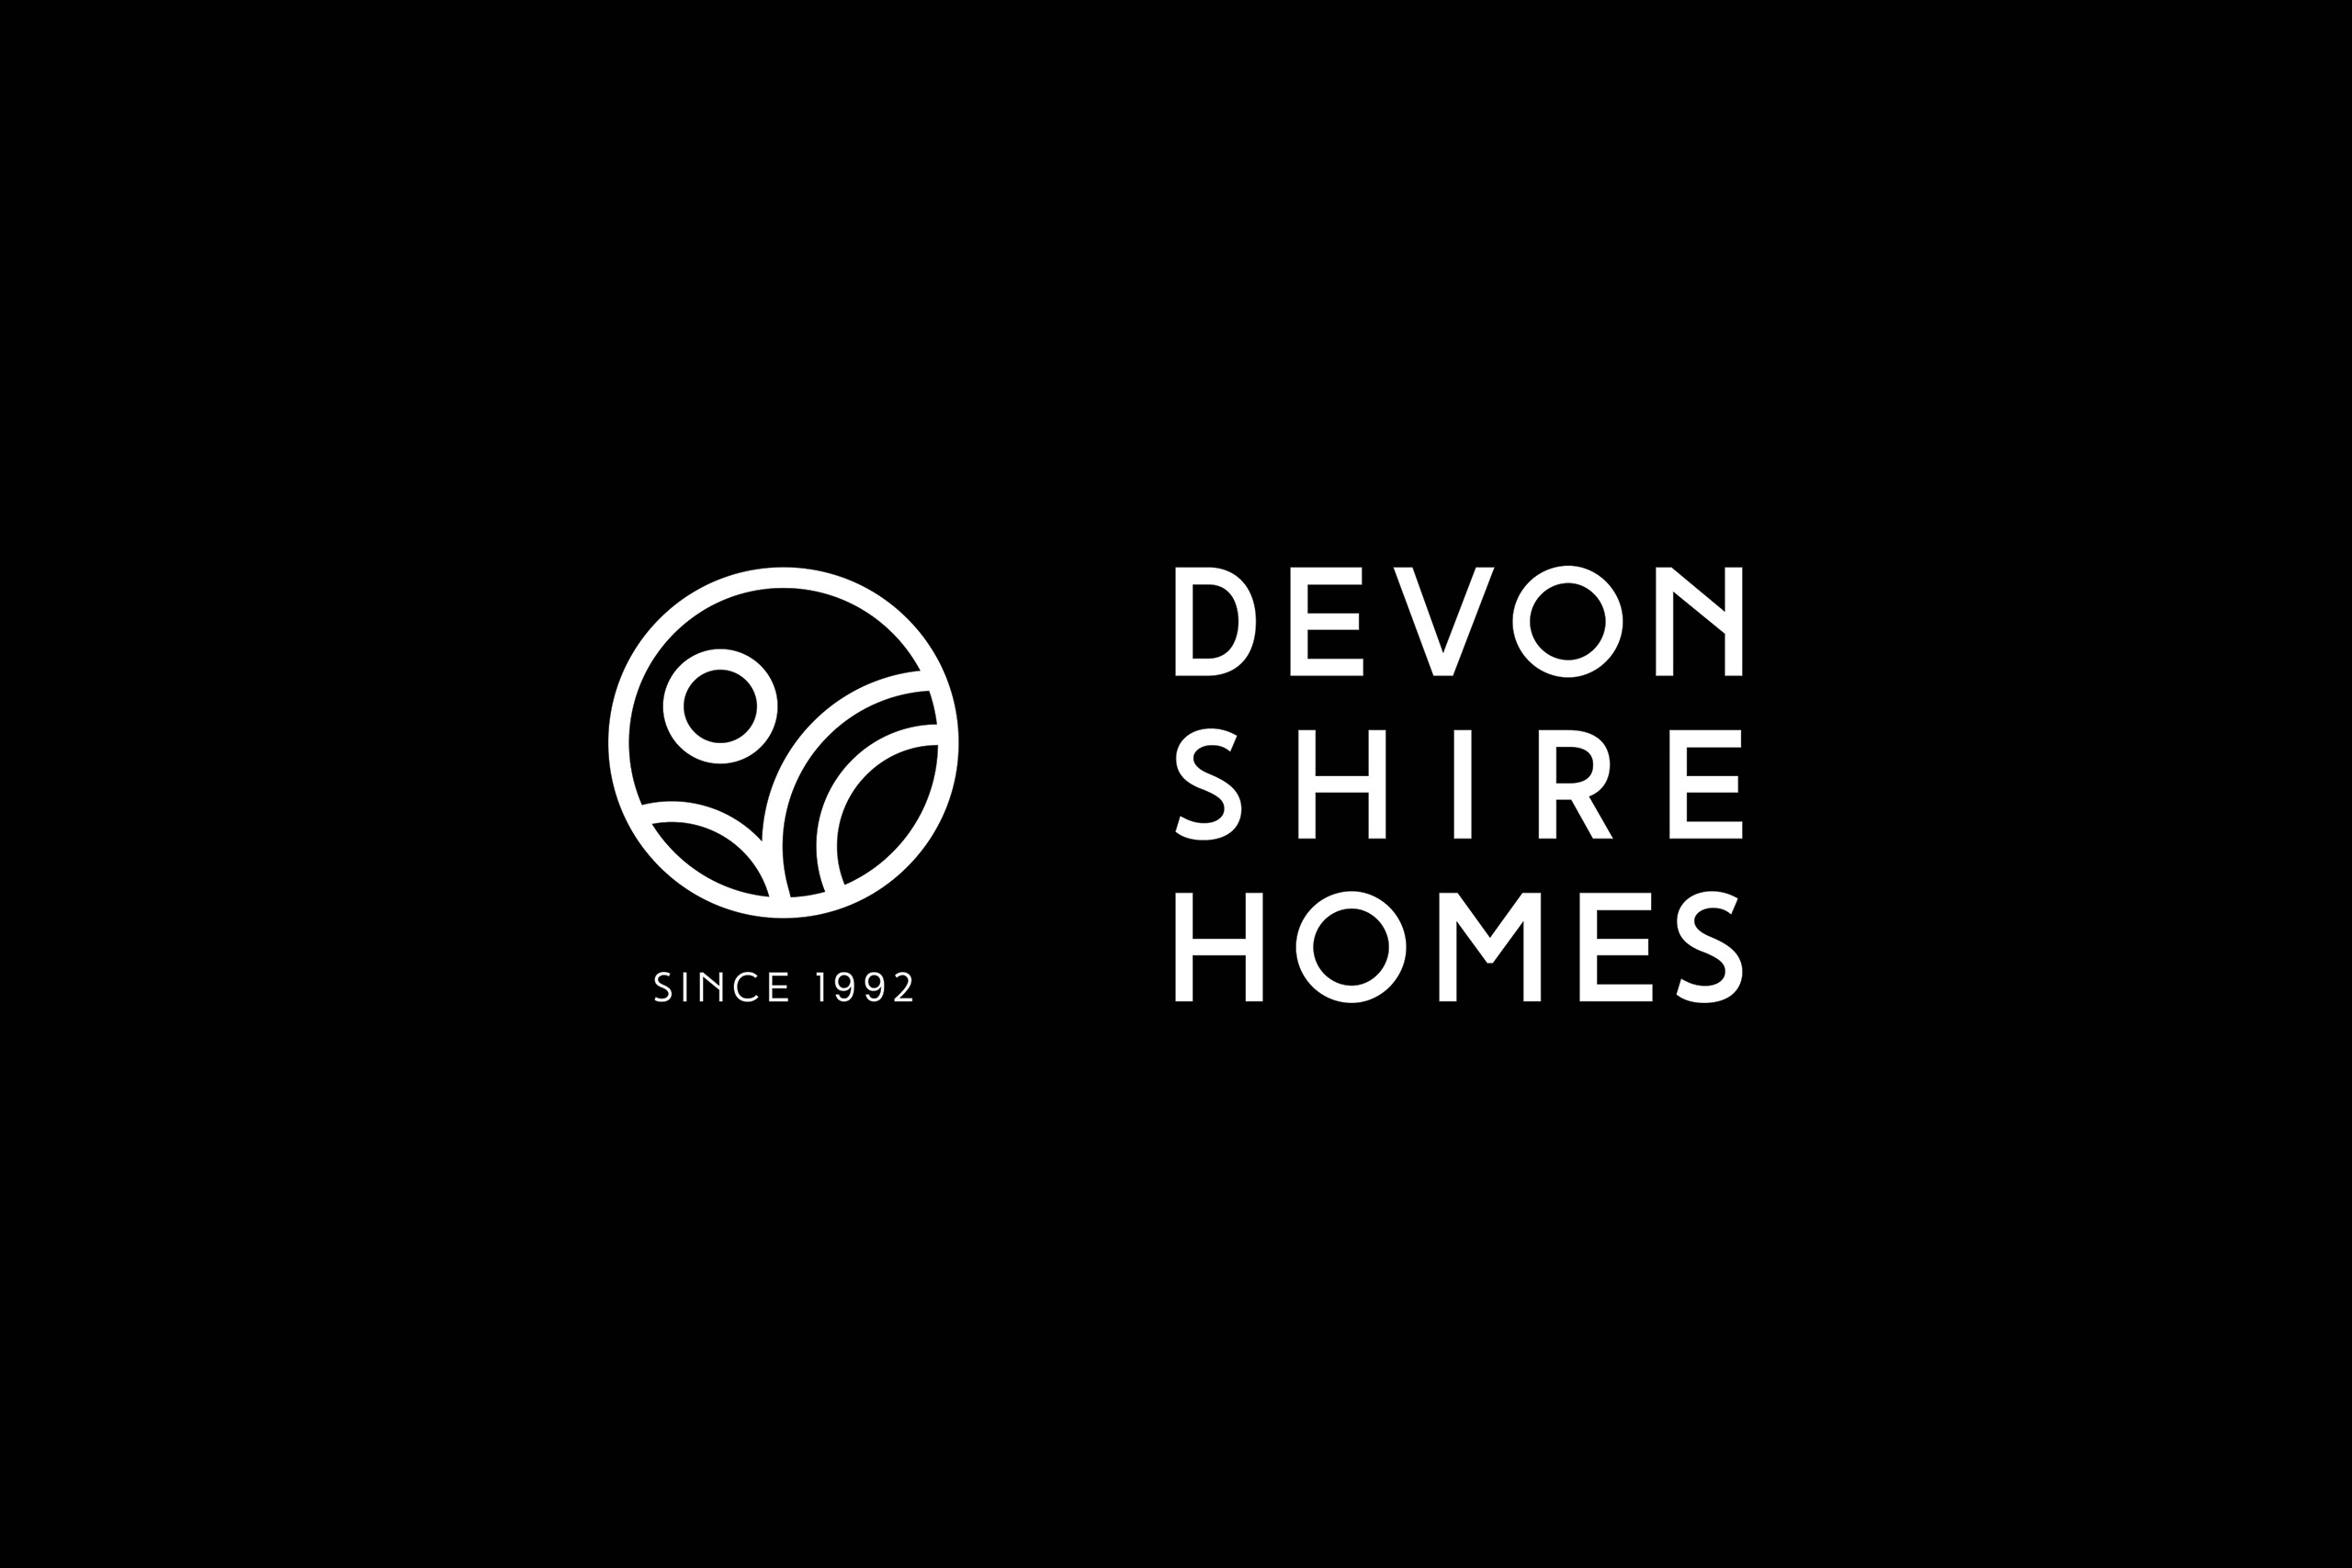 Devonshire Homes - Brand development